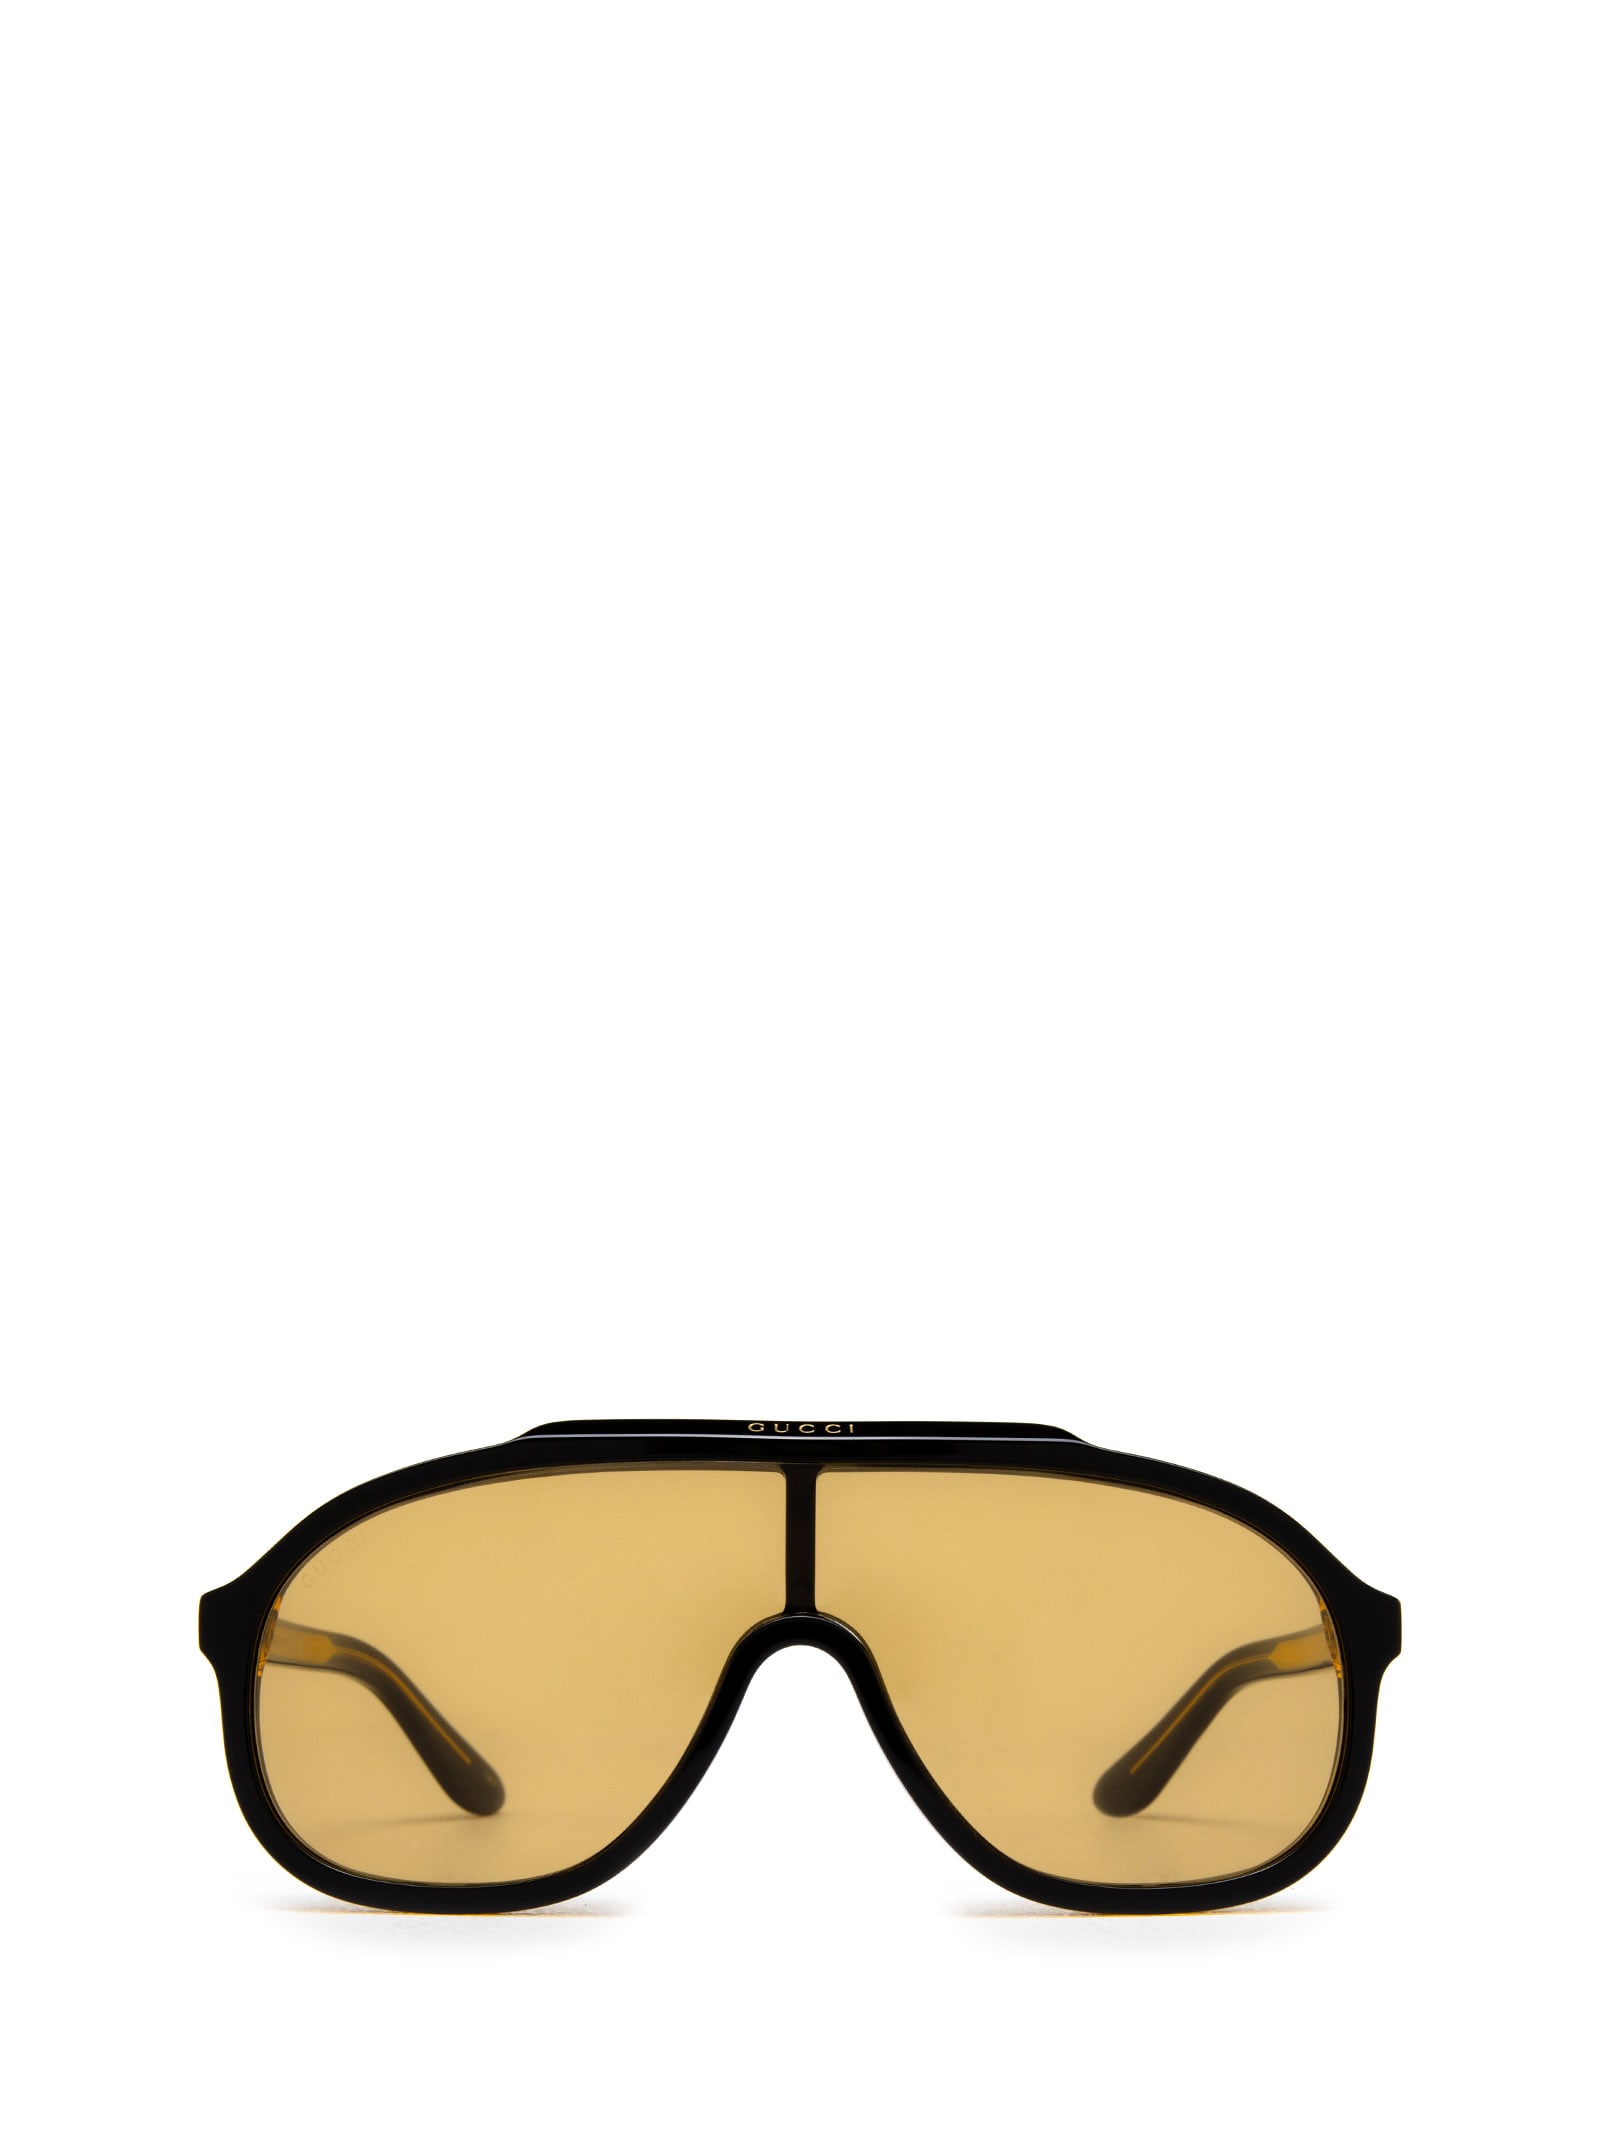 Gucci Shield Sunglasses In Black / Yellow | ModeSens